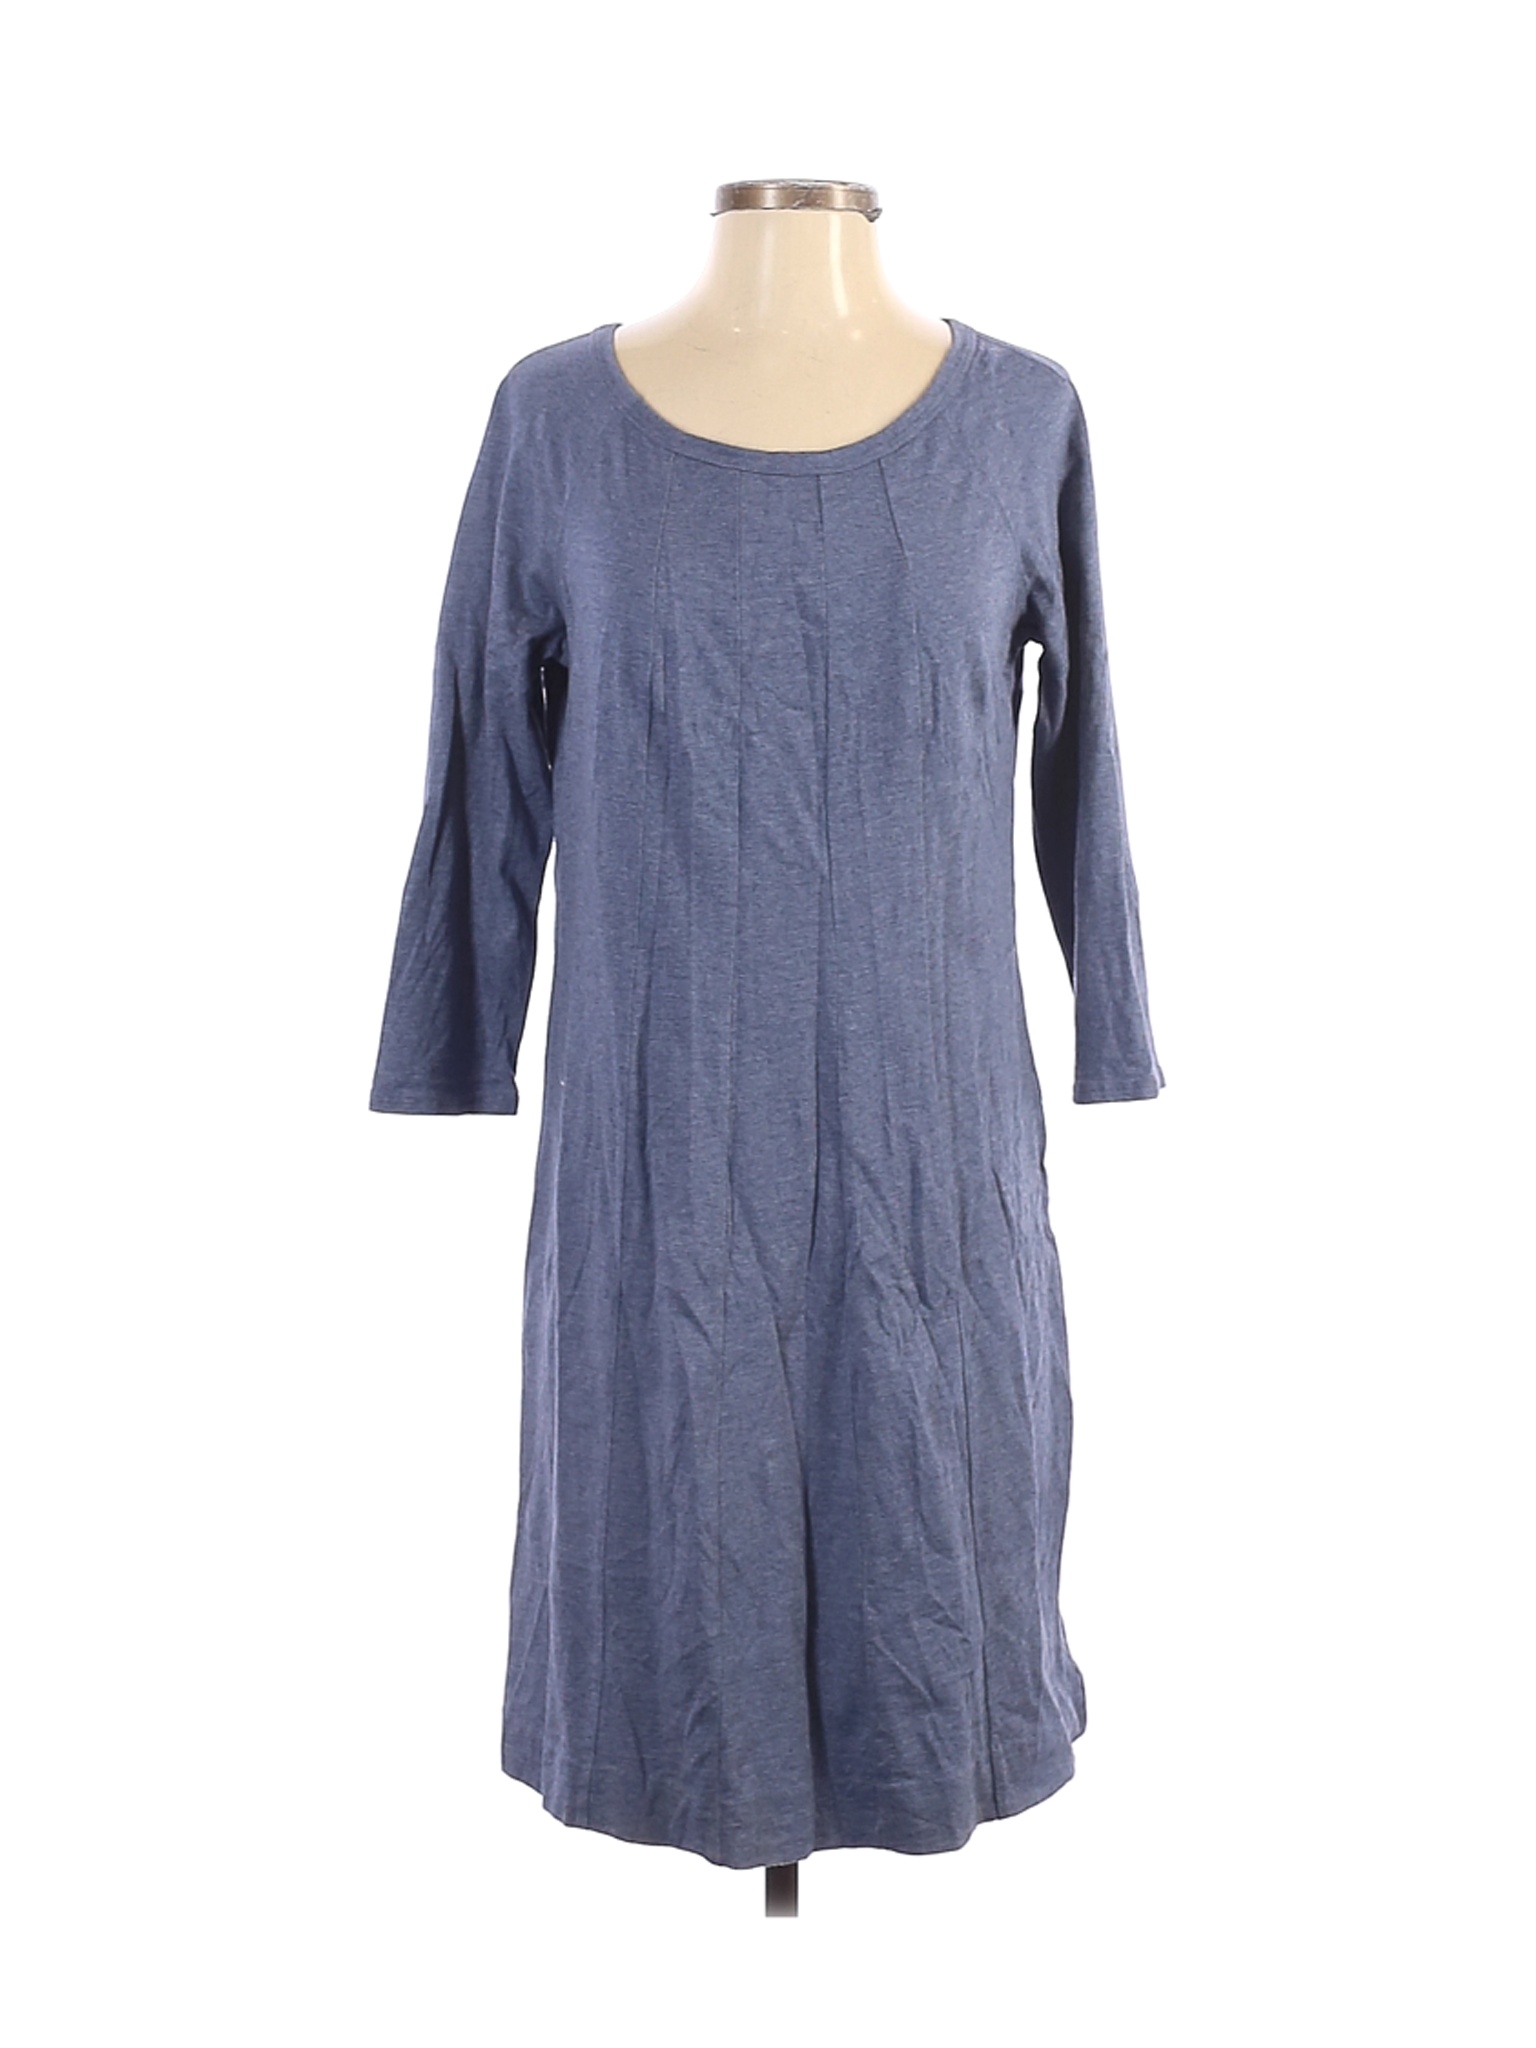 J.Jill Women Blue Casual Dress S | eBay